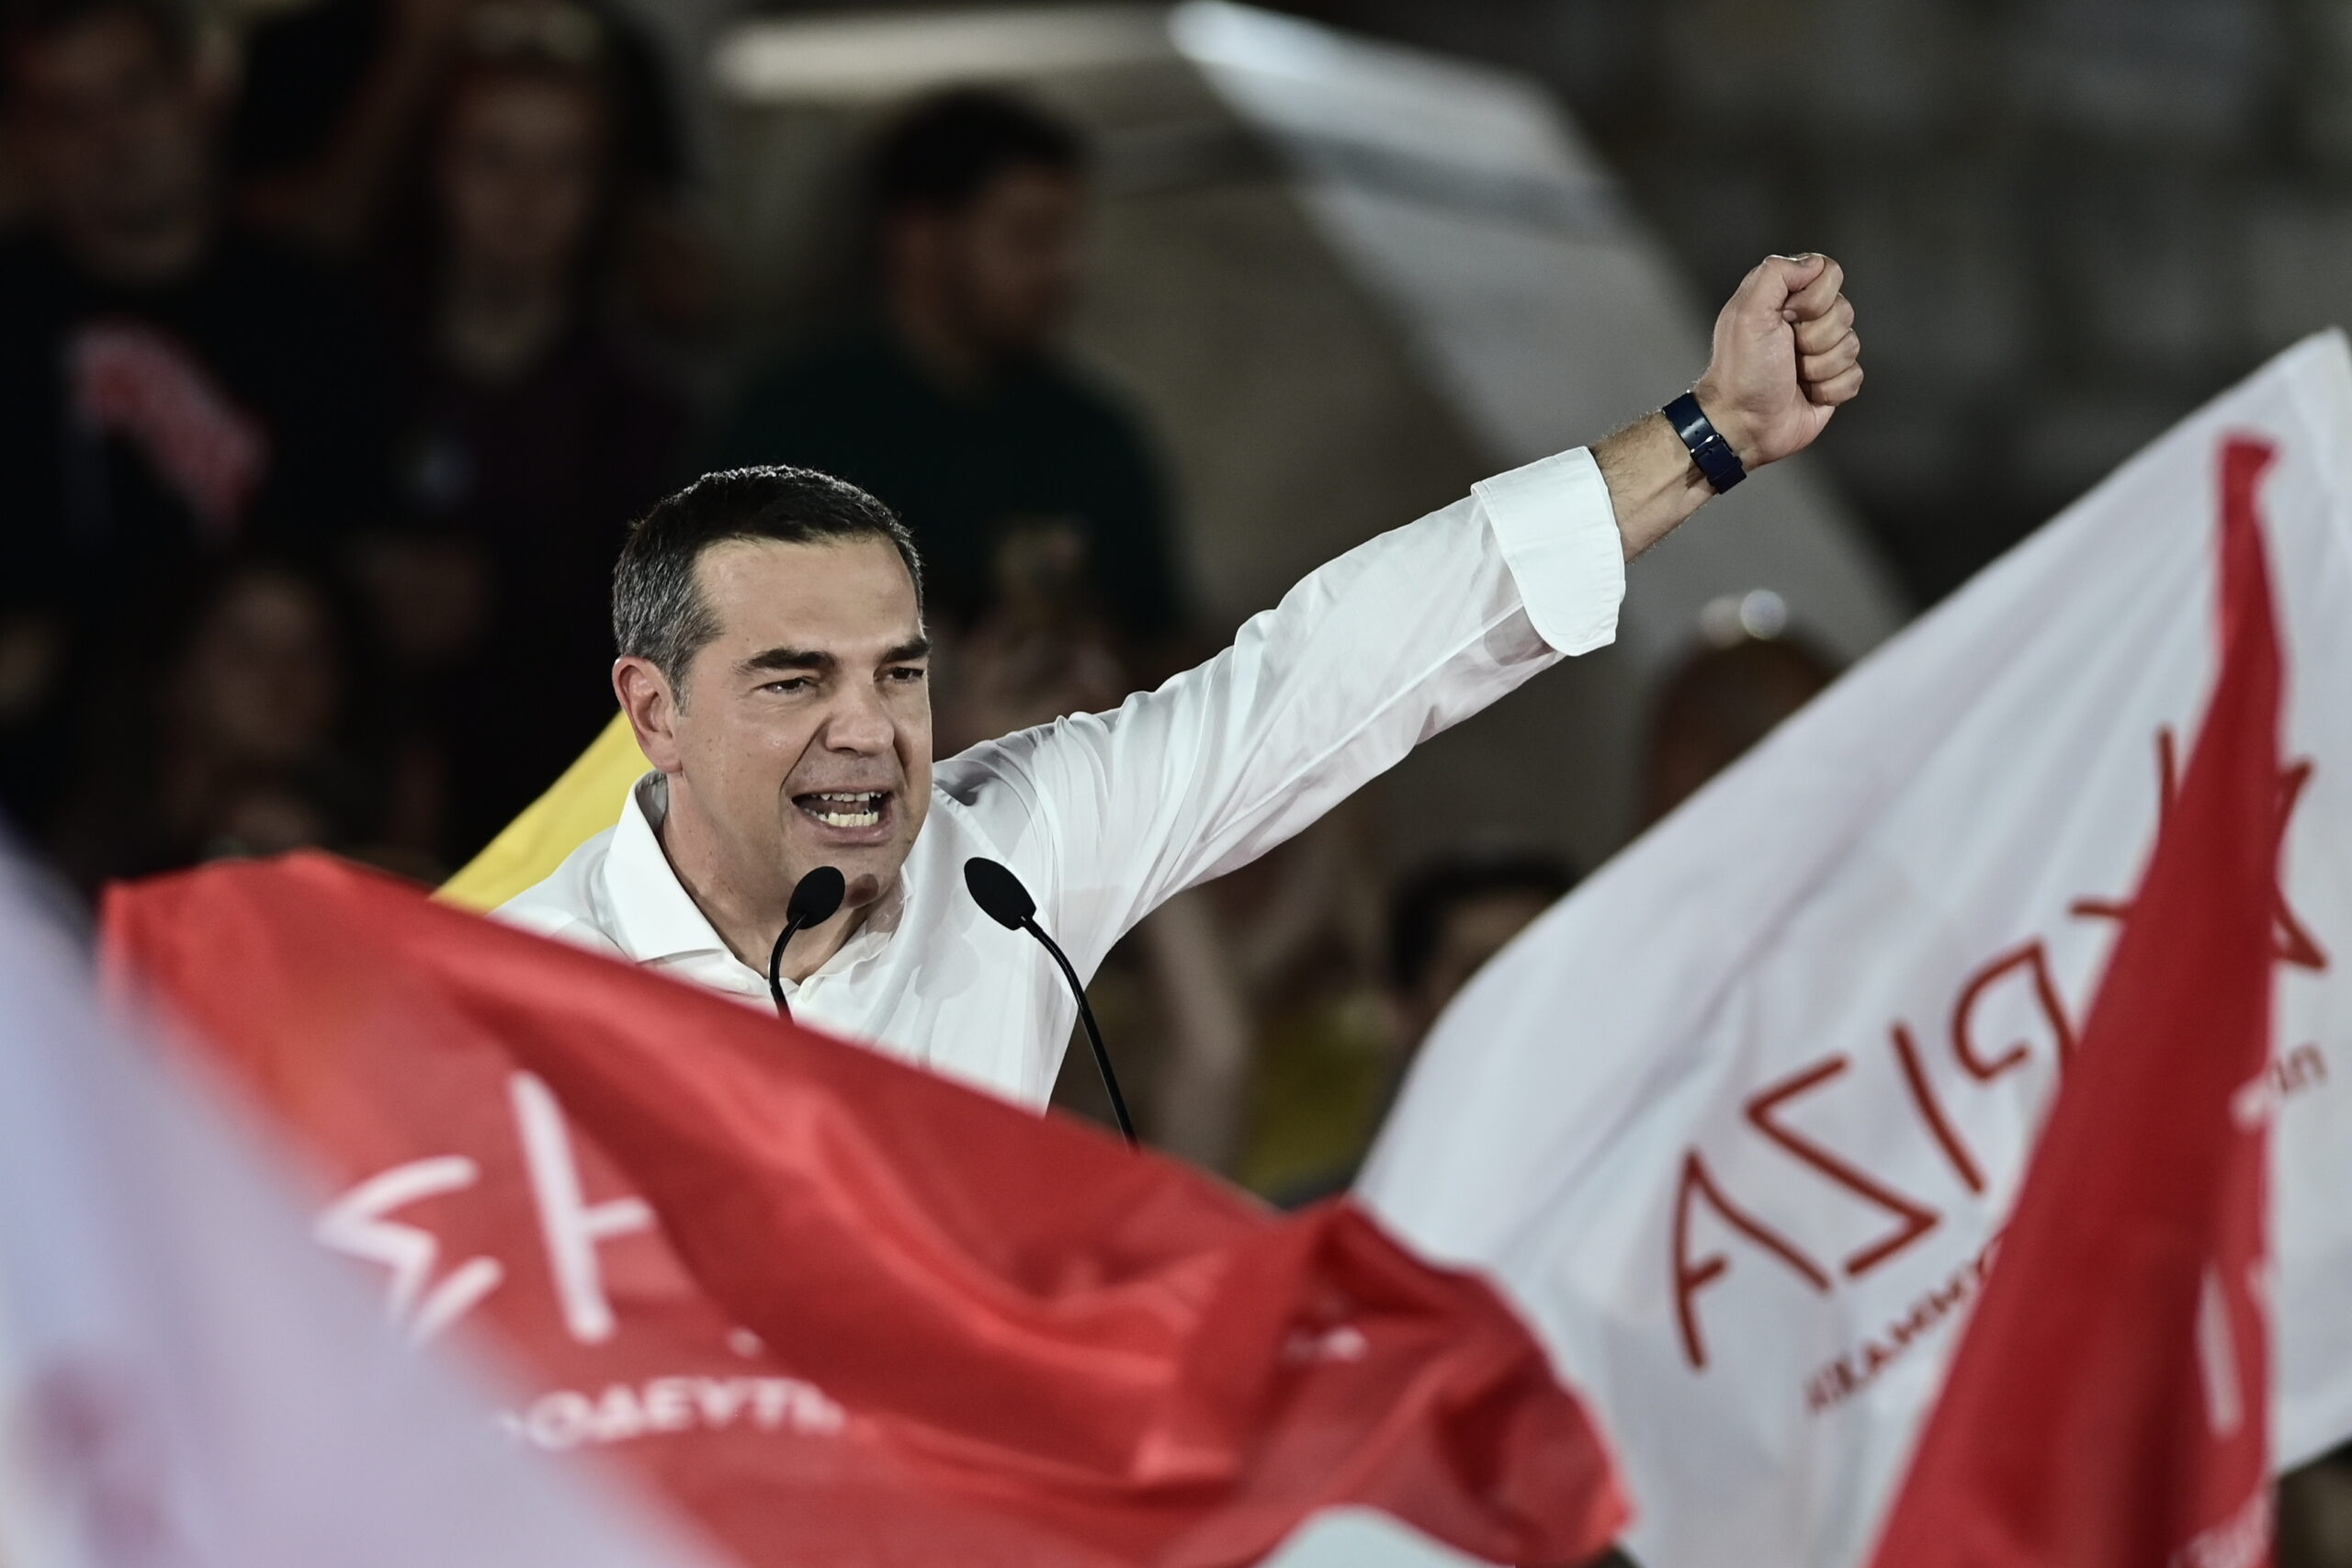 Αλ. Τσίπρας: Στοιχείο της δημοκρατίας να έχουμε έναν ισχυρό ΣΥΡΙΖΑ, αντίπαλο δέος στον κ. Μητσοτάκη – Τι απάντησε για το αν θα μείνει στην ηγεσία του κόμματος